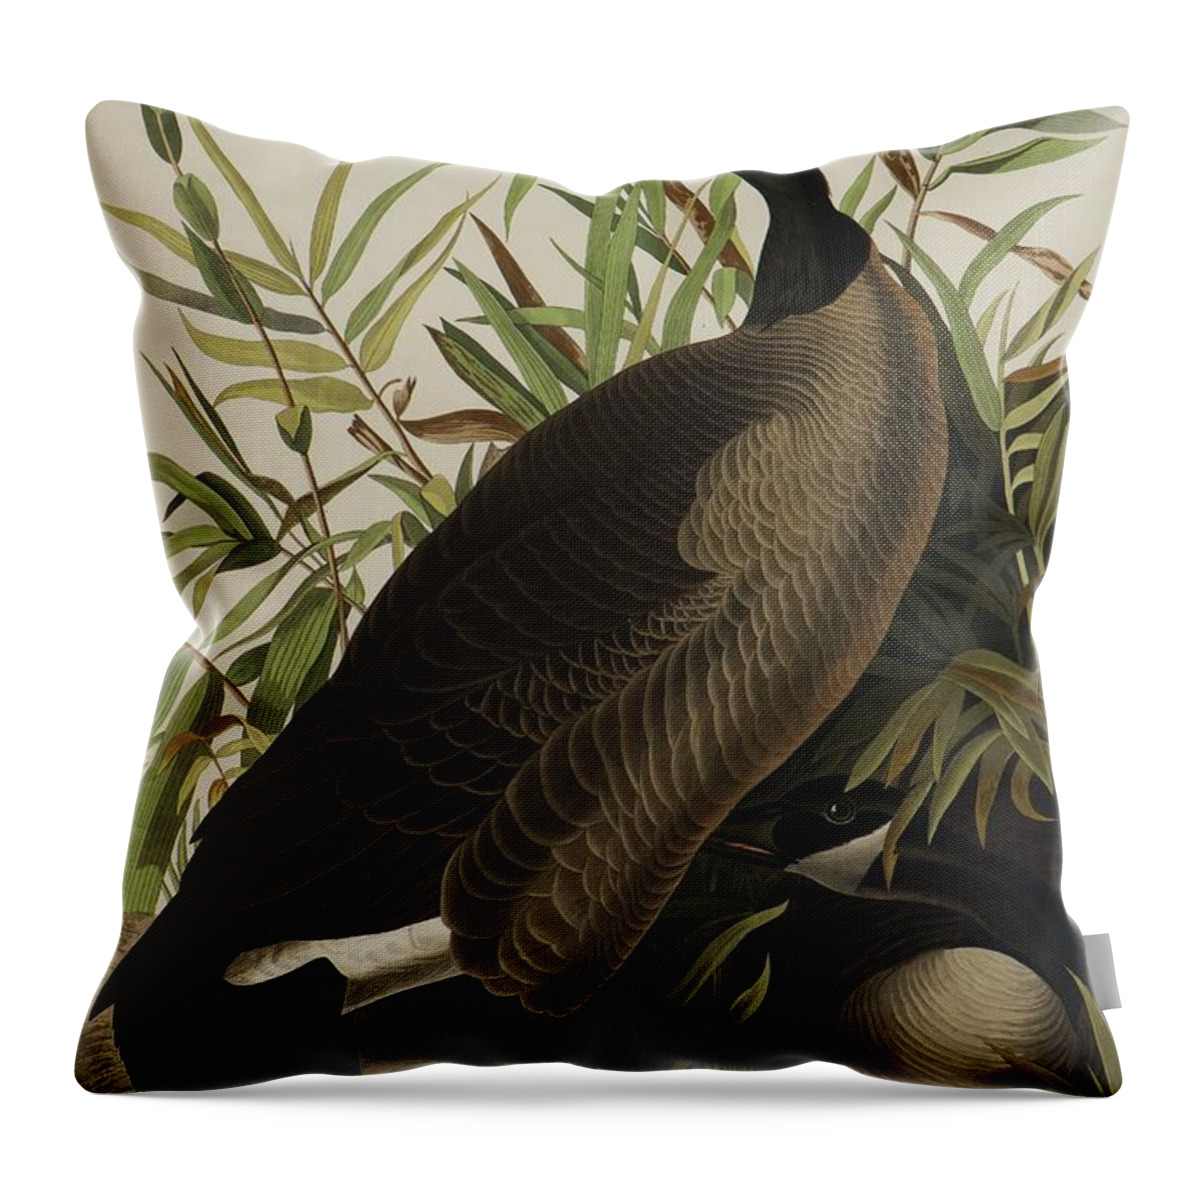 Audubon Throw Pillow featuring the painting Canada Goose by John James Audubon